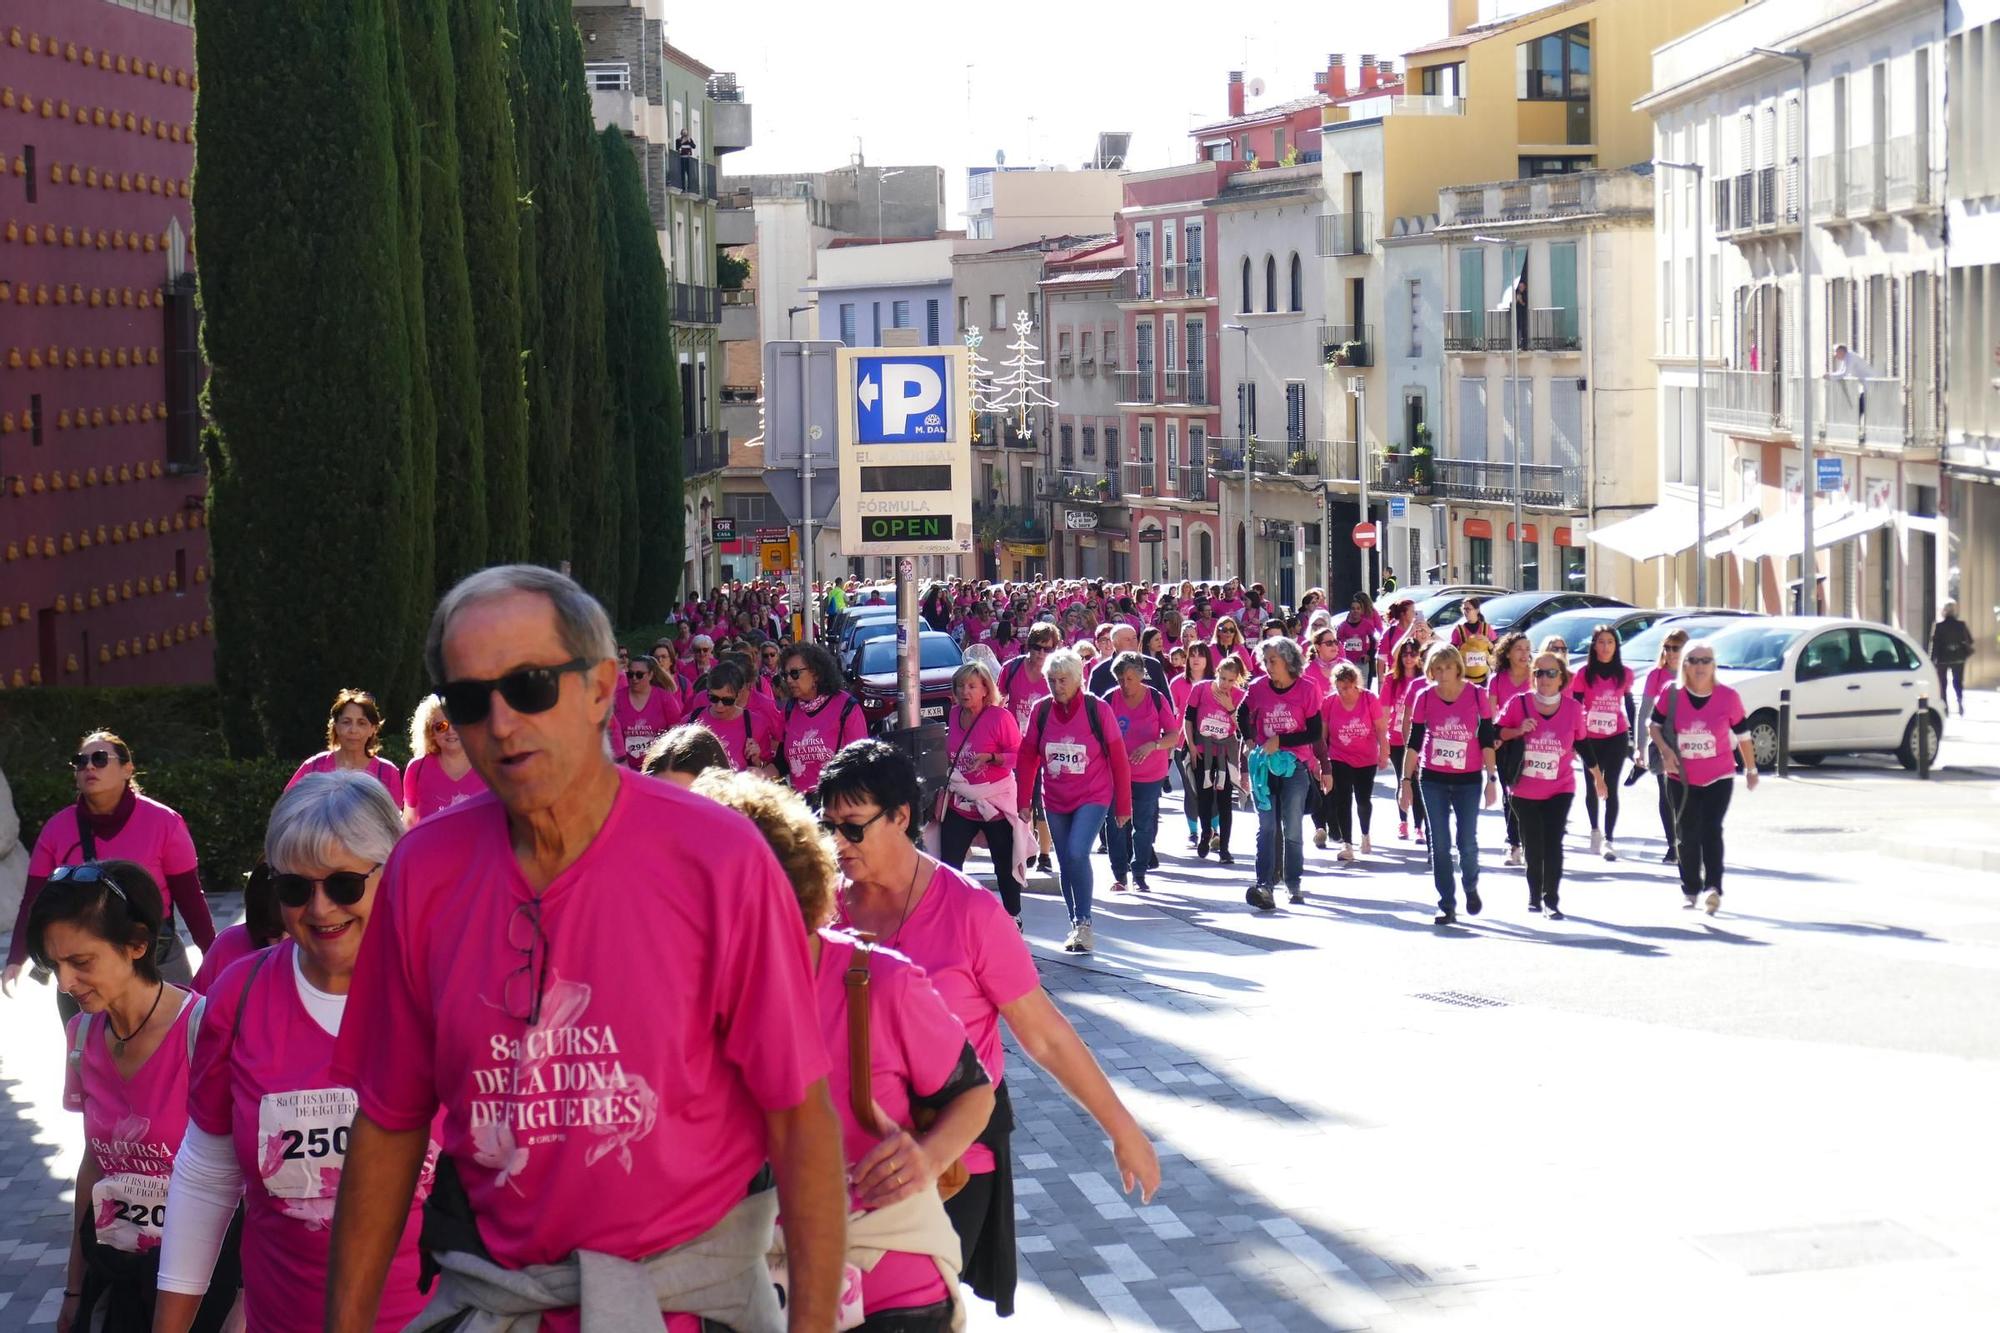 Vas participar a la Cursa de la Dona de Figueres 2023? Busca't en aquesta galeria d'imatges